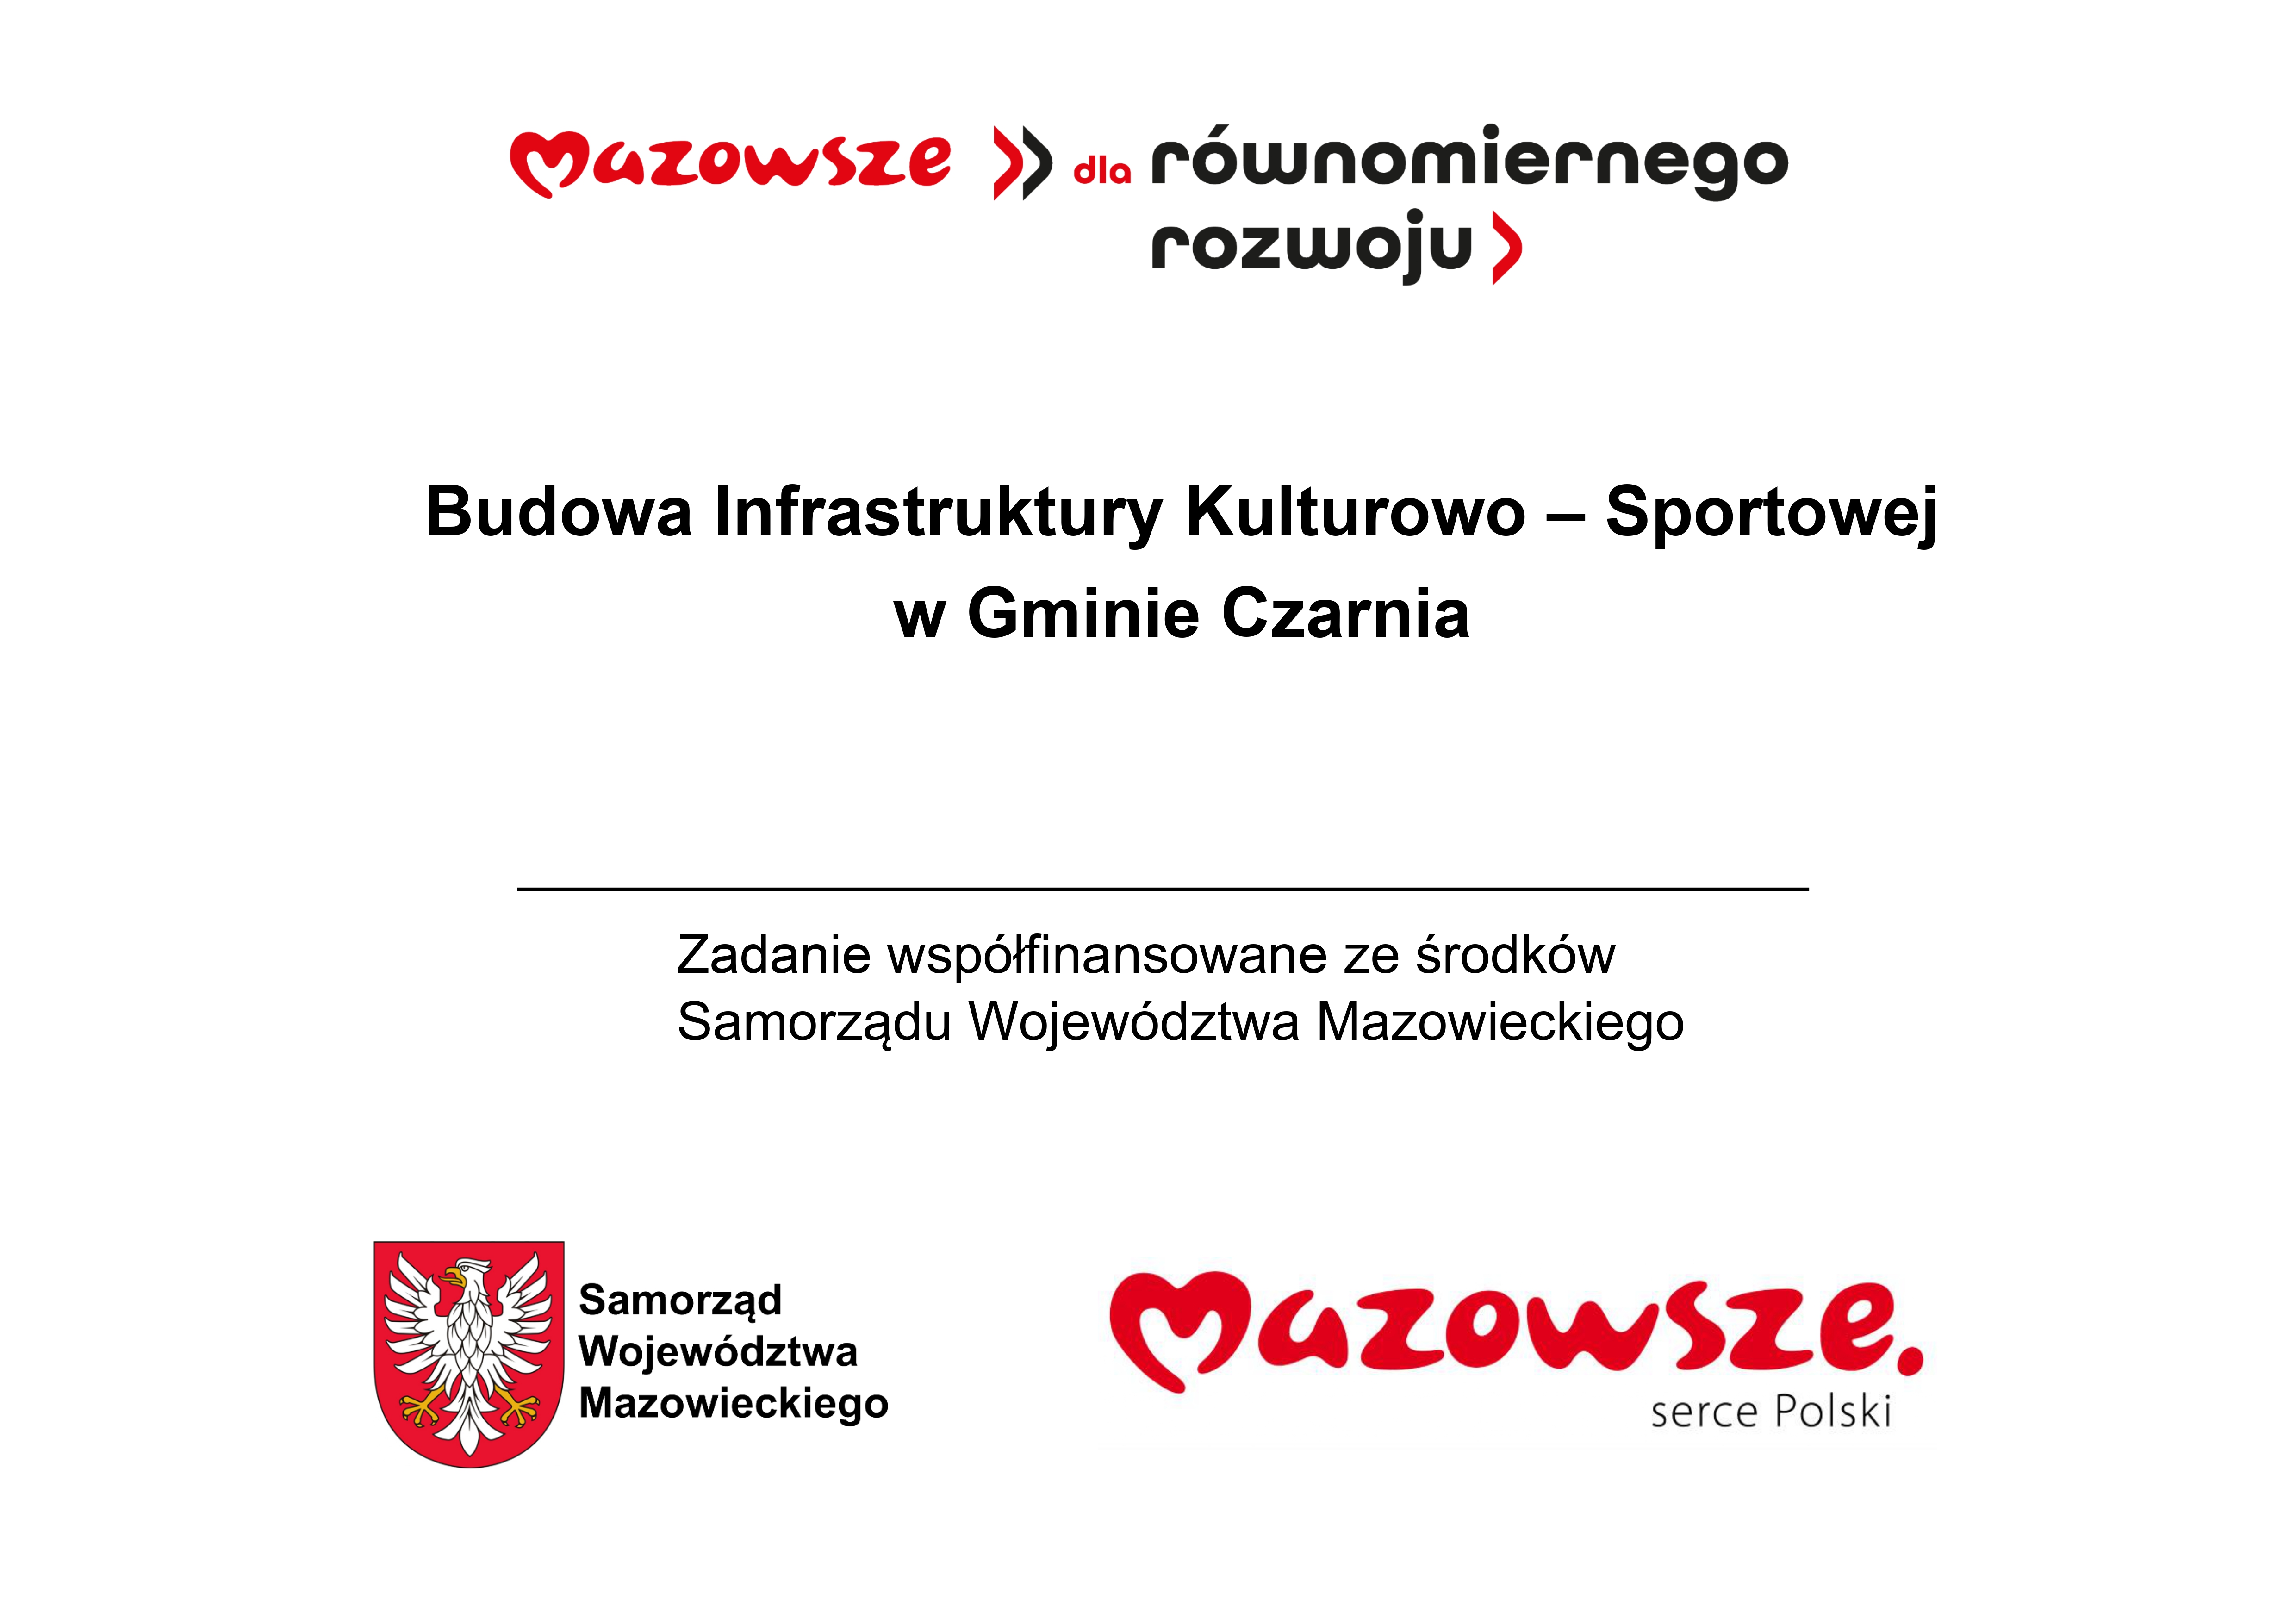 Budowa infrastruktury kulturowo-sportowej_page-0001.jpg (1.20 MB)